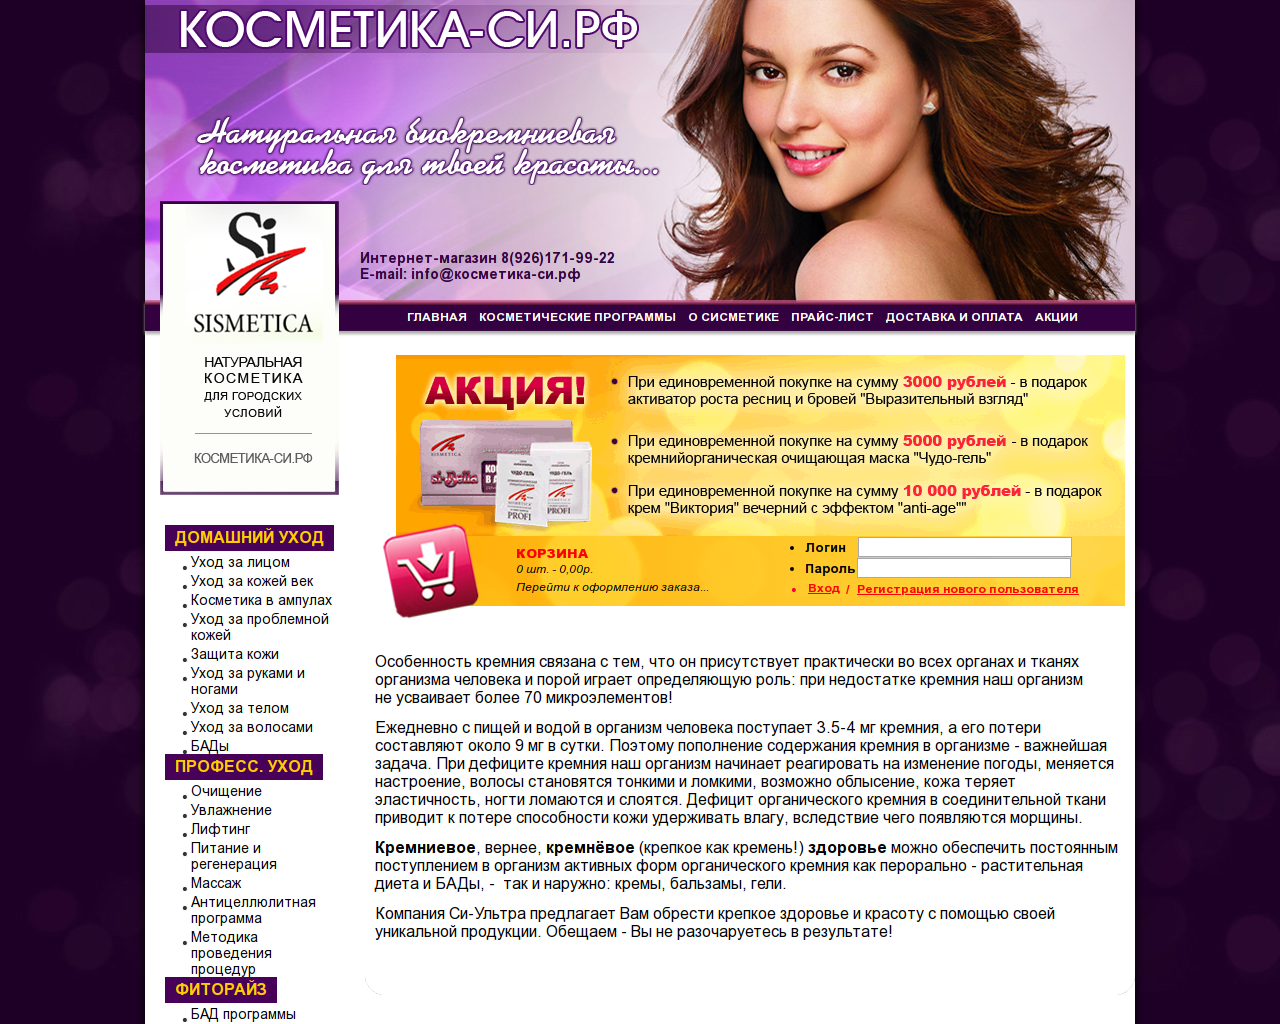 Изображение сайта косметика-си.рф в разрешении 1280x1024